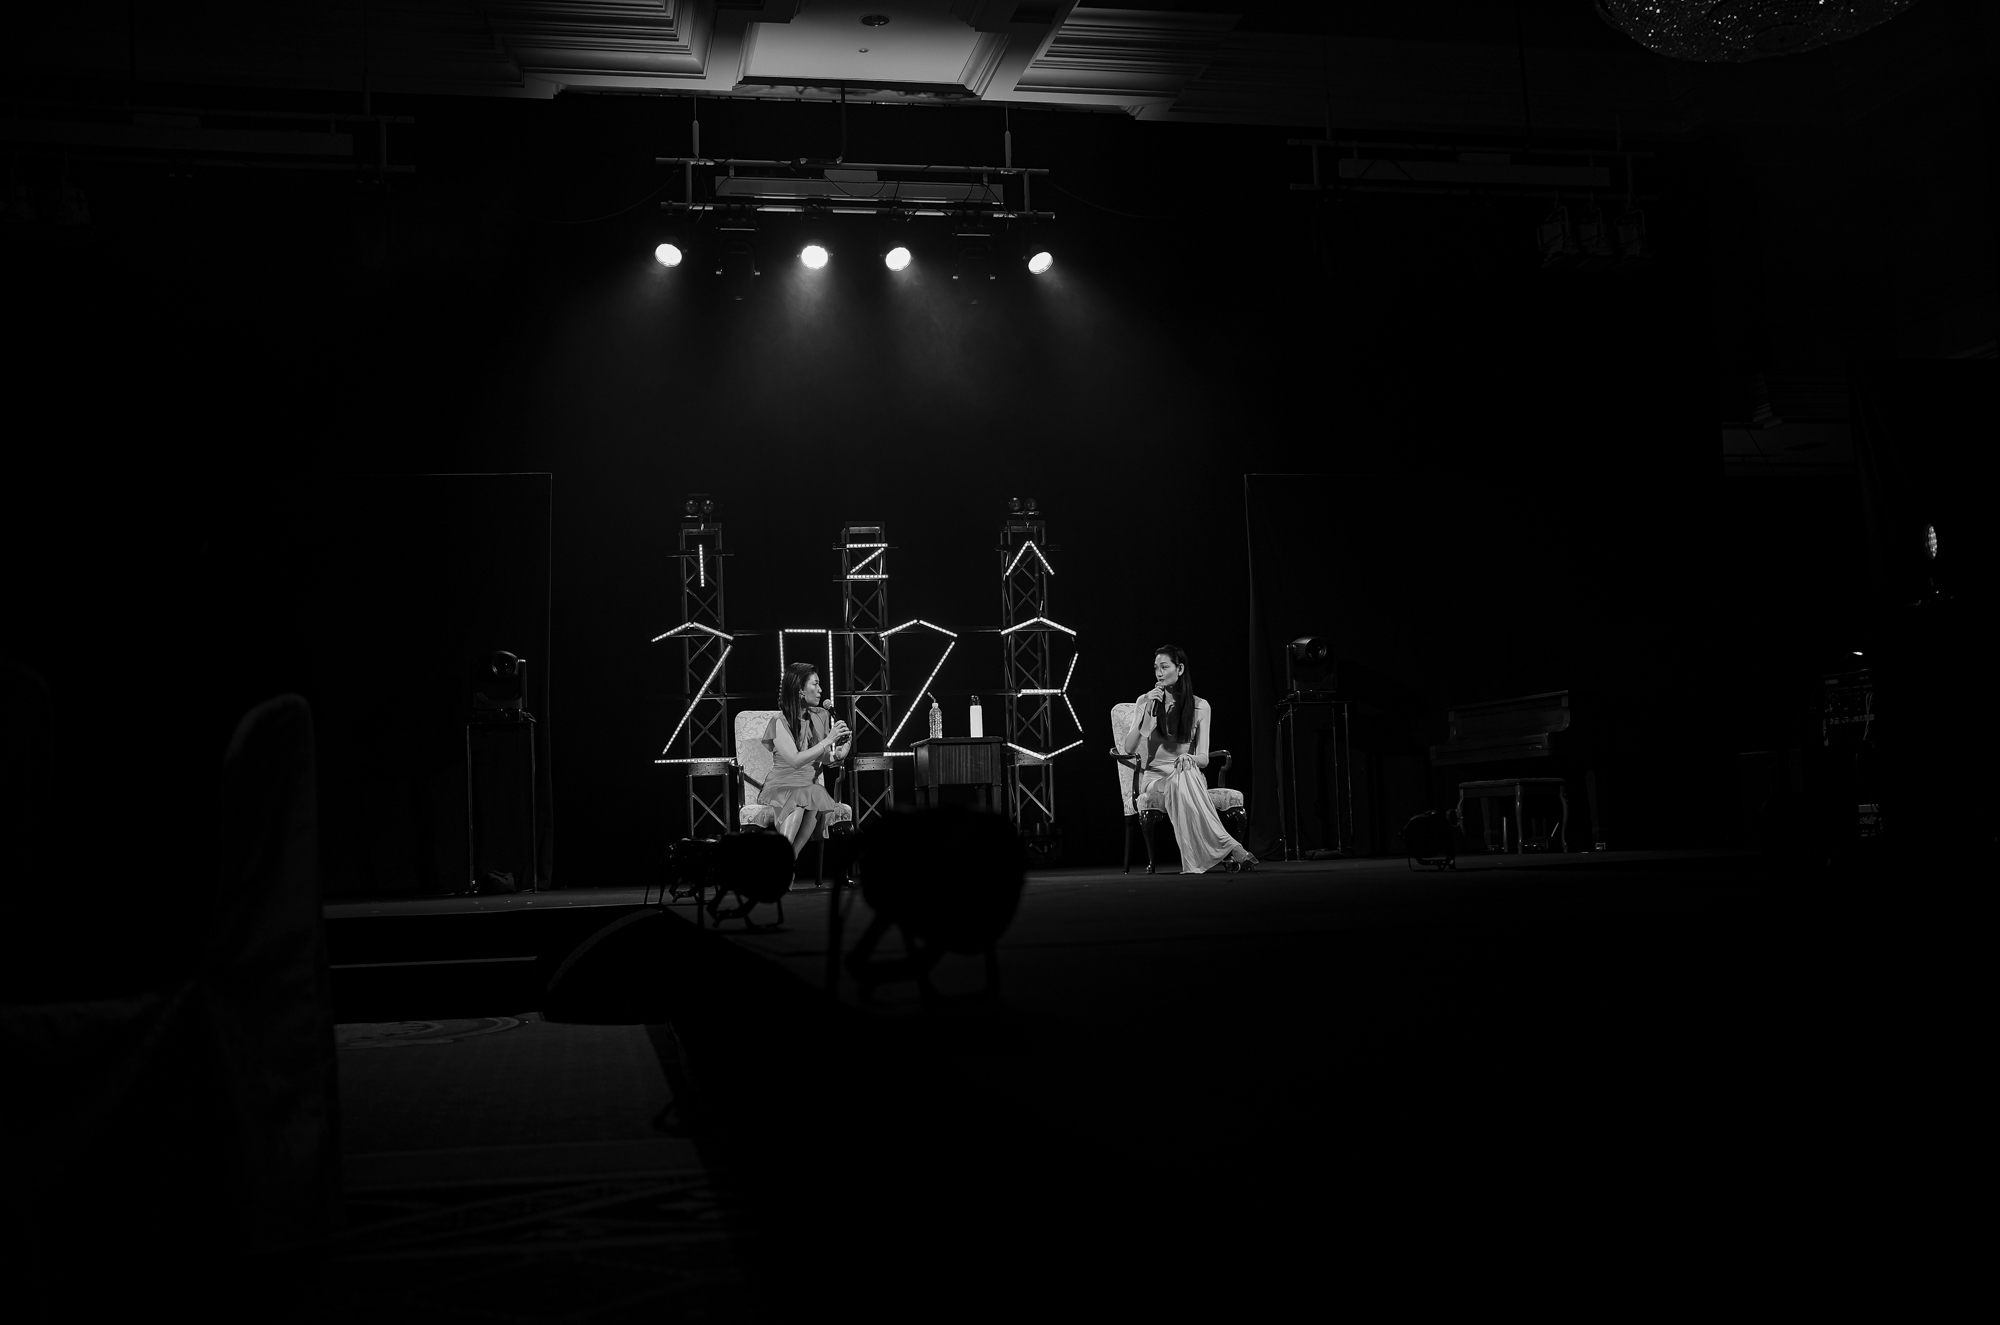 愛知 名古屋 Alto e Diritto altoediritto アルトエデリット IZA PINK CHRISTMAS 2023 // The Ritz-Carlton Osaka 2F The Grand Ballroom ファッションイベント ファッションショー ファッションチャリティイベント「I Z A PINK CHRISTMAS 2023」を12月20日(水)に開催いたします。2007年に乳がんの早期発見・診断・治療の大切さを伝える啓蒙活動であるピンクリボン運動のチャリティイベントとしてスタートし、今年で16回目を迎えます。豪華なゲストによるパフォーマンスやファッションショー、トークショーを開催するほか、チャリティ抽選会を実施。日時:12月20日(水) 開場:17：00 開演 :18：00会場:ザ・リッツカールトン大阪 2F ザ・グランド・ボールルーム会費:55,000円コースディナー・シャンパーニュ ＆ワインフリーフロー特典:I Z A ショッピングチケット10,000円を贈呈お申し込みはお電話で承りますI Z A Osaka📞06-6533-7877I Z A Tokyo📞03-3486-0013※会費のご入金確認をさせて頂き次第、受付完了となります。お席は先着順に決定致します。予めご了承下さい。【I Z A PINK CHRISTMAS について】2007年に乳がんの早期発見・診断・治療の大切さを伝える啓蒙活動のピンクリボン運動のファッションチャリティイベントとしてスタート。「ファッションを通して人々に夢を与え、幸せにする」という思いをコンセプトに、毎年12月のクリスマスイベントとして開催してきました。それからピンクリボンに限らず、災害支援をはじめ、動物愛護活動を行う「公益財団法人動物環境・福祉協会Eva」や、世界の妊産婦と女性の命と健康を守るために活動する「公益財団法人ジョイセフ」などのチャリティも実施。ピンクリボン運動、災害支援、動物愛護のほか、女性支援、LGBTQ+、ダイバーシティ、サステナブルなどメッセージを発信します。THE RITZ -CARLTON OSAKA ザ・リッツカールトン大阪 〒530-0001 大阪府大阪市北区梅田２丁目５−２５  大阪梅田の５つ星ホテル西日本の玄関口、大阪梅田に位置するザ・リッツ・カールトン大阪。シルクハットを被ったドアマンがお迎えする正面扉から一歩足を踏み入れると、18世紀の英国貴族の邸宅を彷彿とさせる優雅な空間が広がります。館内にはミシュランの星に輝くフランス料理「ラ・ベ」、日本料理「天ぷら花筐」を含む6つのレストラン＆バーを擁し、24～37階の高層階に位置する全291の客室からは、大阪市内の美しい街並みを一望いただけます。また、洗練されたクラブラウンジでは、専属のコンシェルジュがお客様にユニークで思い出に残る体験をお約束いたします。当ホテルは、日本初のザ・リッツ・カールトンとして開業して以来、四半世紀以上にわたり、心のこもったパーソナルなおもてなしで紳士淑女の皆様をお迎えしてまいりました。2023年には『フォーブス・トラベルガイド』において、大阪で初めて“五つ星”の称号を獲得。日本のラグジュアリーホテルのフラッグシップ的な存在として、卓越したサービスをご提供しております。 2023年4月29日 4月30日 HOTEL ALLAMANDA AOYAMA HOTEL ALLAMANDA AOYAMA ホテル アラマンダ 青山 〒107-0061 東京都港区北青山2-7-13 チェックイン　アラマンダ青山 https://hotel-allamanda-aoyama.jp/ Mount Fuji 2022年12月27日火曜 2022.12.25 アルトエデリット Alto e Diritto 師走 虹霓 こうげい 中華 2022年12月20日 火曜  四川料理 一星 移転 那古野 虹霓さん 高級中華 愛知県名古屋市西区那古野1-34-16 052-756-3939 四川料理、中華料理 https://www.instagram.com/china.kougei/# https://omakase.in/r/yk870221 中国菜一星 Kimiyo.Tokyo 恵比寿 大阪とらふぐの会 キミヨトウキョウ 東京都渋谷区恵比寿３丁目２８−１２ ＡＴＹビル 2階 世界中でも、日本だけで食されているふぐ。その歴史は千年以上も昔から引き継がれたものです。それだけ日本人に愛され、文化として根付く「ふぐ」は「日本の食の誉れ」といえるのではないでしょうか。そんな「日本の食の誉れ」を春夏秋冬いつでも最高の状態でご提供できることに、私たちはいつも感謝しています。当店では、主に2〜3キロ前後のサイズの大型ふぐを使用しております（季節により変動あり）。とらふぐの会は会員制の料理店 うしごろ USHIGORO S. NISHIAZABU 東京都港区西麻布2-24-14 Barbizon73 B1F 全席完全個室、すべてにこだわり抜いた"うしごろ"の最高級ブランド各部屋専属の熟練した焼き師が、田村牧場から仕入れた極上希少部位と、岡崎牧場の「近江牛」を匠の技で焼き上げ、ご提供いたします。 牧場・血統にまでこだわり抜いた極上のコースを、世界の銘酒とあわせてご堪能いただけます。【鳥取 田村牧場】黒毛和牛の源流、「但馬」の血統を頑なに守り続ける田村牧場。長期肥育と牝の処女牛にこだわった、最高級の黒毛和牛を育て続けています。【滋賀 岡崎牧場】純血但馬牛の生産者として６代にわたる歴史をもつ岡崎牧場。和牛にかける情熱と味への飽くなきこだわりは、日本三大和牛の一つに称される「近江牛」の中でも最高峰の評価を得ています。"USHIGORO S."- Select ・ Special ・ Stylish ・ Smart ・ Spirit -厳選した特別な食材 ・ 洗練された空間 ・ スマートなサービス ・ 情熱 私たちの想いを『S』の一文字に込め、名付けました。 HOTEL ALLAMANDA AOYAMA HOTEL ALLAMANDA AOYAMA ホテル アラマンダ 青山 〒107-0061 東京都港区北青山2-7-13 チェックイン　アラマンダ青山 https://hotel-allamanda-aoyama.jp/ Roppongi 六本木 片山勇 isamukatayamabacklash ギロッポン 会心の一撃 スナック 恵比寿 歌って飲める、昭和レトロな憩いの場 YEBISU GARDEN PLACE  チェキ ガーデンプレイス スナックオープン 中華風家庭料理 ふーみん (表参道/中華料理)　〒107-0062 東京都港区南青山５丁目７−１７ 03-3498-4466　表参道・青山エリアの南青山の中華料理店、中華風家庭料理 ふーみんのオフィシャルページです　CHACOあまみや　千駄ヶ谷の有名なステーキ屋「CHACOあめみや」 炭焼きステーキ 〒151-0051 東京都渋谷区千駄ケ谷１丁目７−１２ 03-3402-6066 http://chacoamemiya.com/sp/ １９７９年（昭和５４年）に開店してから当時のままの姿の店内は重みを感じる。　（お客様からは「昭和の香りがする・・」と言われます）真っ白だった壁も年月を感じさせる趣がある。店内に入るとまず目に入るのが、大きな炭焼きの竈。営業当時からの肉の旨みを沢山吸い込んでいるかも・・・。１９７９年（昭和５４年）に開店してから当時のままの姿の店内は重みを感じる。　（お客様からは「昭和の香りがする・・」と言われます）真っ白だった壁も年月を感じさせる趣がある。店内に入るとまず目に入るのが、大きな炭焼きの竈。営業当時からの肉の旨みを沢山吸い込んでいるかも・・・。炭で焼かれたステーキのお皿は鉄板ではなく鋳物です。牛肉は融点が高いため冷めやすい鉄板ではすぐに肉が固くなってしまいます。チャコのお皿は長い時間温かいので柔らかい牛肉をゆっくりご賞味いただけます。ワイン片手に語らいながら心安らぐ美味しい時間をお過ごしください。LA BISBOCCIA　ラ・ビスボッチャ/LA BISBOCCIA (広尾/イタリアン) RISTORANTE LA BISBOCCIA 〒150-0013 東京都渋谷区恵比寿2-36-13 広尾MTRビル1F "イタリア政府公認レストラン"として選ばれた本格的イタリアン。スタッフもイタリア人が中心で、イタリアにいる気分になれそうな空間。 https://labisboccia.tokyo/ 愛知 名古屋 Vineria Cassini ヴィネリア カッシーニ 東別院 イタリアン 愛知県名古屋市中区伊勢山1-9-13 伊勢山ハイツ1F #1F Iseyamahaitsu, 1-9-13 Iseyama Naka-ku, Nagoya-shi, Aichi-ken 460-0026, Japan イタリアを旅するような気分で楽しむ郷土料理と様々なワイン "Vineria(ヴィネリア)とは、イタリア語でVino(ワイン)＋Osteria(食堂)を足した造語です。 イタリアの郷土料理とその土地で造られた様々なワインをイタリアを旅するような気分でお楽しみいただけます。 「イタリア現地の味」を目指した素材を生かすストレートかつ伝統的なイタリア料理をアラカルトもしくはコースでお楽しみください。 約200種類のイタリアワインの中から、ソムリエがベストなワインを選びます。お料理やお好みに合わせたグラスワインやワインコースもご用意しております。"2021年10月15日 煖 MEI メイ イタリアン 国際センター 名古屋市西区那古野1-23-2 四間道糸重3 mei-nagoya.com shikemichi サンタキアラ Santa Chiara コース 18時一斉スタート きのこ キノコ 森内敬子　モーゼ十戒　ナナツモリピノノワール 2016 pinot noir ドメーヌタカヒコ 曽我貴彦 北海道余市郡余市町登町1395  ワイン名古屋市東区徳川町　天然キノコ MEI 那古野 ネコ 猫　にゃんこ 愛知 名古屋 Alto e Diritto altoediritto アルトエデリット カウンター7席 えごま　味噌カツ ミソカツ みそかつ とんかつ 東別院 〒460-0021 愛知県名古屋市中区平和2丁目16-15 052-323-0963  鶴舞線のガード下にあるトンカツの美味しいお店 みそかつ えごま　和食 美奈登 ミナト 老舗焼肉店 神宮前/焼肉 レトロ モクモク 味噌ダレ とんちゃん 熱田 ホルモン ヤキニク とんねるず ペレ きたなシュラン 懐かし 名鉄堀田駅から徒歩20分 瑞穂区 〒467-0879 愛知県名古屋市瑞穂区平郷町2-6-2 LA VAGABONDE ラ・ヴァガボンド フレンチ フランス料理 鶴舞 ラヴァカボンド chef ryousuke iwamoto 岩本龍介 予約のとれないフレンチ 名店 美食家 放浪者 旅人 愛知県名古屋市中区千代田2丁目14-24 キャノンピア鶴舞 1F 愛知 名古屋 Alto e Diritto altoediritto アルトエデリット 超絶フレンチ ドレスコード ディナー STEAK HOUSE Beef Okuma ステーキハウス ビーフオークマ 名古屋店 霜降り黒毛和牛 サーロイン フィレ シャトーブリアン 仙台牛 宮城牛 近江牛 150g 200g ハンバーグ 松坂屋 名古屋店 愛知　名古屋 Alto e Diritto altoediritto  GW休暇 Alto e Diritto アルトエデリット altoediritto 愛知 名古屋 ゴールデンウィーク 休暇 炭火焼肉 煖  だん ダン 愛知 名古屋 焼き肉  名駅店 瑞穂本店 Alto e Diritto altoediritto アルトエデリット 夢 希望 Dream FREEMASONRY フリーメーソン AUDEMARS PIGUET オーデマピゲ SEX PISTOLS セックスピストルズ JOY DIVISION ジョイディヴィジョン DAVID BOWIE デヴィットボーウィ THE VELVET UNDERGROUND ザベルベットアンダーグラウンド THE ROLLING STONES ザローリングストーンズ QUEEN クイーン LED ZEPPELIN レッドツェッペリン Alto e Diritto アルトエデリット 愛知 名古屋 Italy MOORER ムーレー / BELVEST ベルベスト / ISAIA イザイア / LUCA GRASSIA ルカグラシア / Alfredo Rifugio アルフレードリフージオ / LARDINI ラルディーニ / De Petrillo デ・ペトリロ / TAGLIATORE タリアトーレ / Sealup シーラップ / EMMETI エンメティ / CINQUANTA チンクアンタ / SILENCE サイレンス / MOLEC モレック / Finamore フィナモレ / ORIAN オリアン / AVINO Laboratorio Napoletano アヴィーノ / INCOTEX インコテックス / INCOTEX SLACKS インコテックススラックス / PT TORINO ピーティートリノ / BERWICH ベルウィッチ / VIGANO ヴィガーノ / RICHARD J.BROWN リチャードJブラウン / FEDELI フェデーリ / MANRICO CASHMERE マンリコカシミヤ / ZANONE ザノーネ / Cruciani クルチアーニ / GRAN SASSO グランサッソ / Settefili Cashmere セッテフィーリカシミア / Girelli Bruni ジレリブルーニ / ENZO BONAFE エンツォボナフェ / FERRANTE フェランテ / GHOUD ゴード / ACATE アカーテ / Cisei シセイ / STEFANO RICCI ステファノリッチ / ALPO アル France Georges de Patricia ジョルジュドパトリシア / SAINT LAURENTサンローラン / CELINE セリーヌ / AUBERCY オーベルシー / lucien pellat-finet ルシアンペラフィネ / NATIONAL STANDARD ナショナルスタンダー U.S.A. South Paradiso Leather サウスパラディソ / JACQUESMARIEMAGE ジャックマリーマージュ / MARC MARMEL マークマーメル / WHITE'S BOOTS ホワイツブーツ / JUTTA NEUMANN ユッタニューマン England GRENFELL グレンフェル / J&M DAVIDSON ジェイアンドエムディヴィッドソン / JAMES GROSE ジェームスグロース / JOHN SMEDLEY ジョンスメドレー / Johnstons ジョンストンズ Other FIXER フィクサー / cuervo bopoha クエルボ ヴァローナ / BACKLASH The Line バックラッシュ ザライン / RIVORA リヴォラ / C.QP / Order Suit オーダースーツ 愛知 名古屋 Alto e Diritto altoediritto アルトエデリット